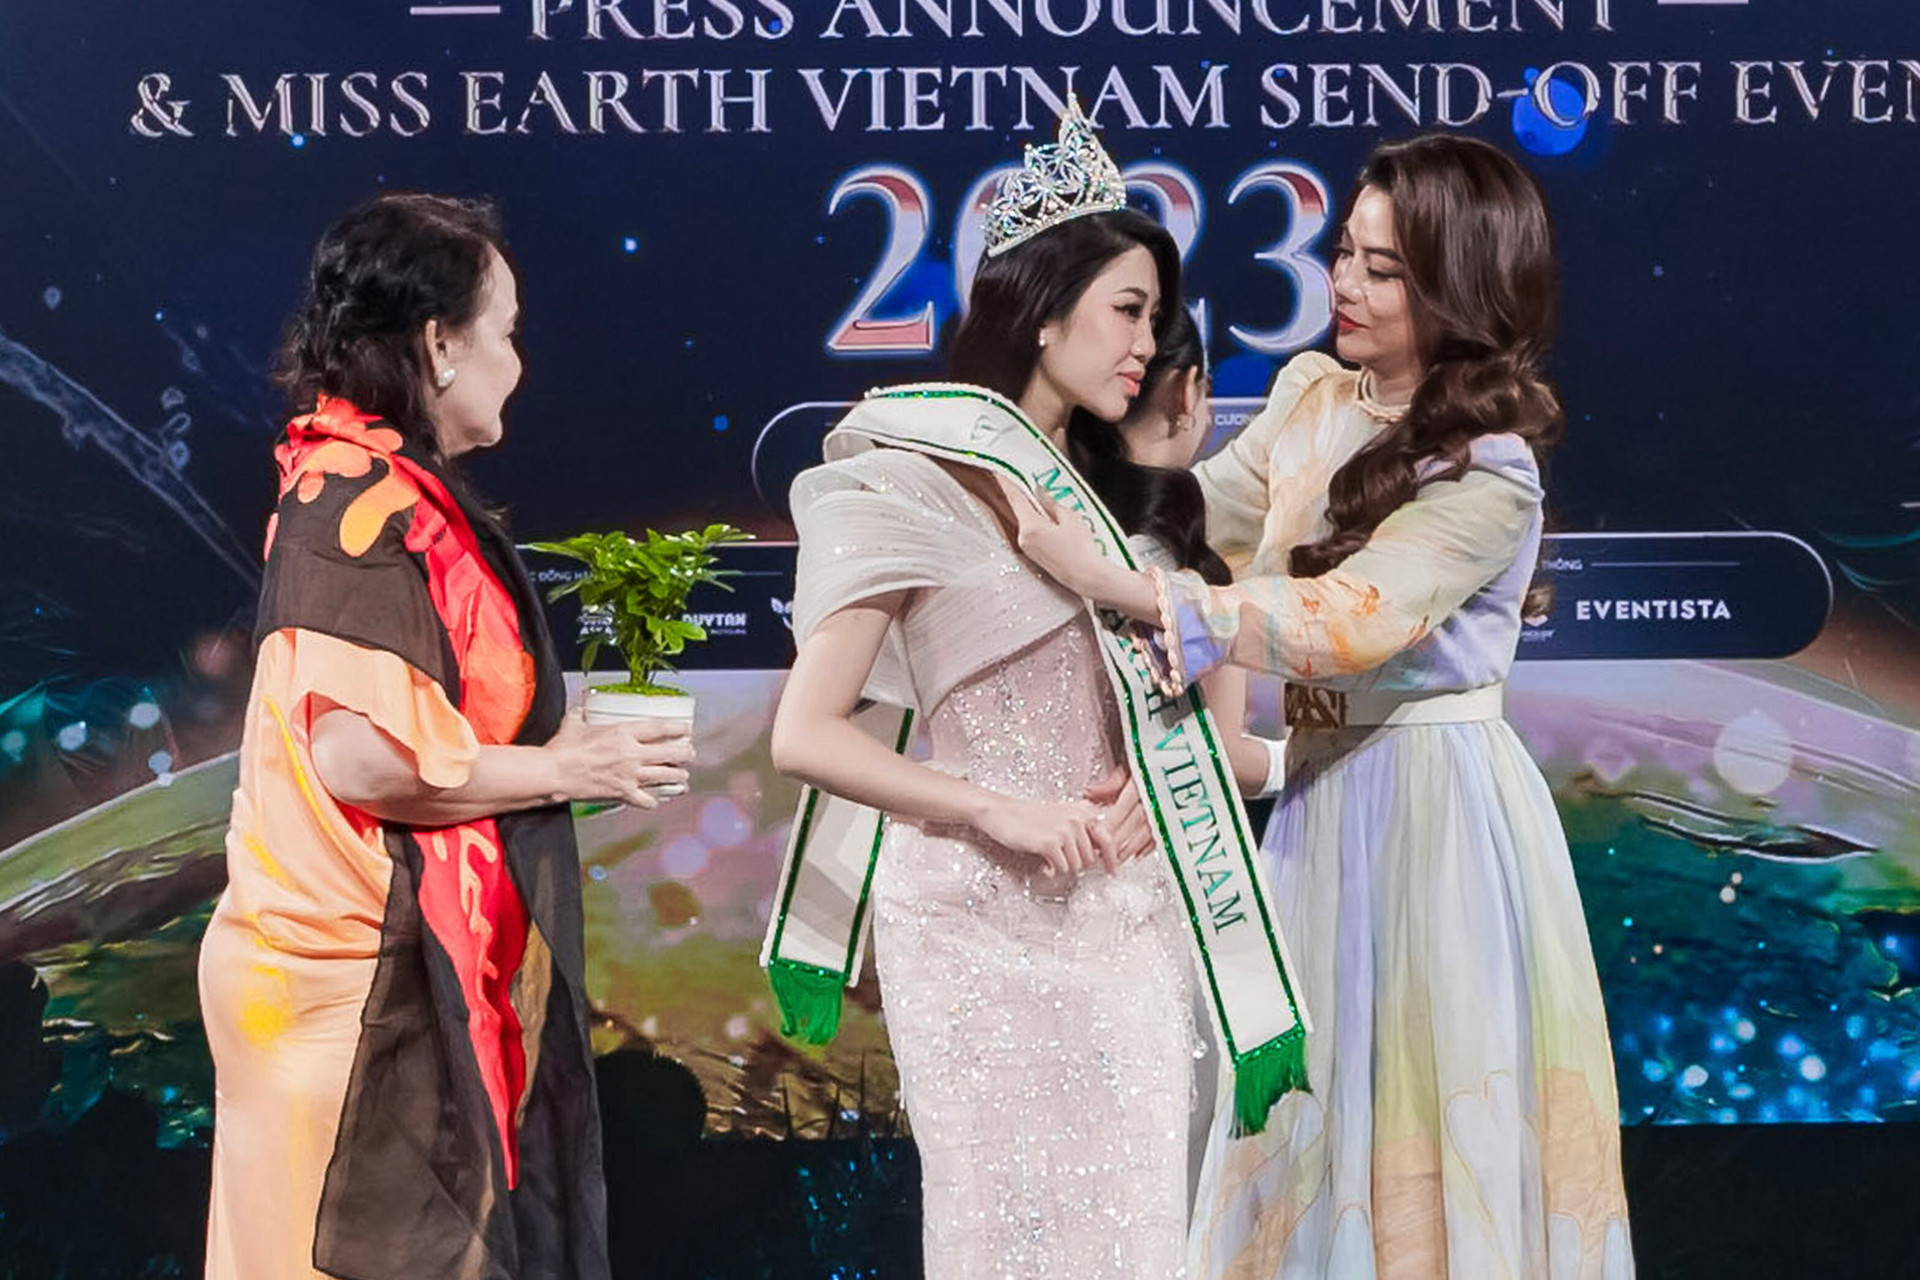 Bà Lorraine Schuck - Phó Chủ tịch Miss Earth - và bà Trương Ngọc Ánh - Chủ tịch Miss Earth Vietnam trao sash cho Đỗ Thị Lan Anh.